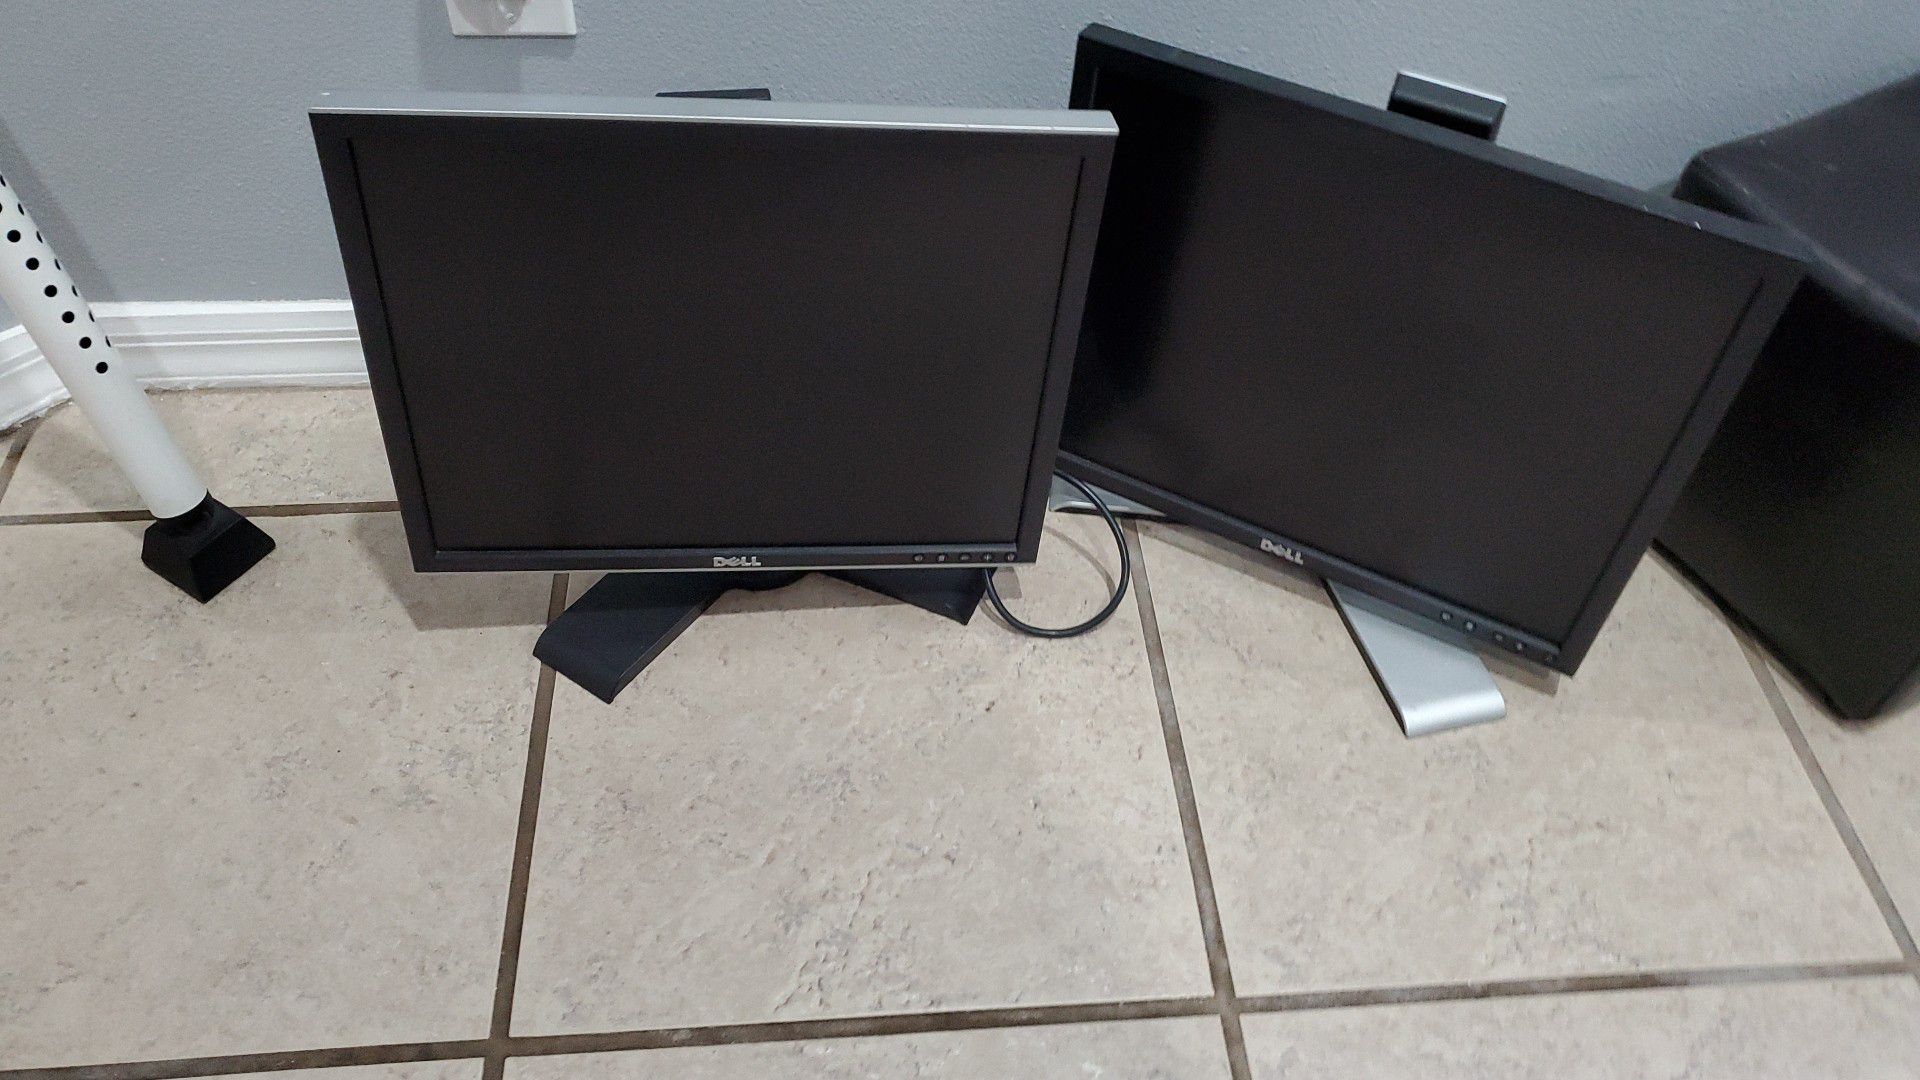 Two Dell Flat Screen Desktop Computer Monitors